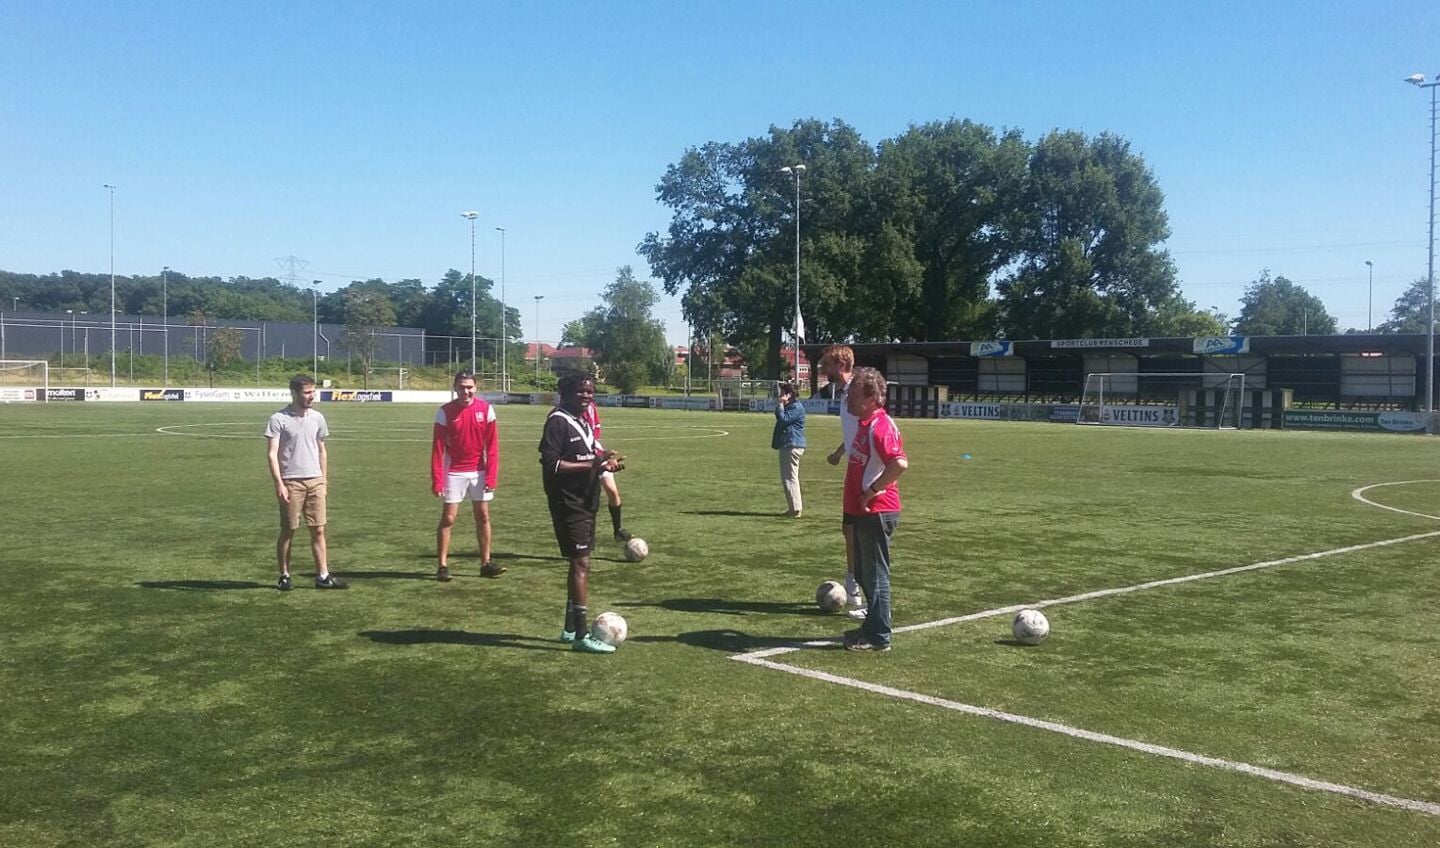 De club toonde zich door de jaren heen al flink maatschappelijk betrokken; zo werden onder meer voetbalactiviteiten voor vluchtelingen gehouden. Beeld uit 2016.